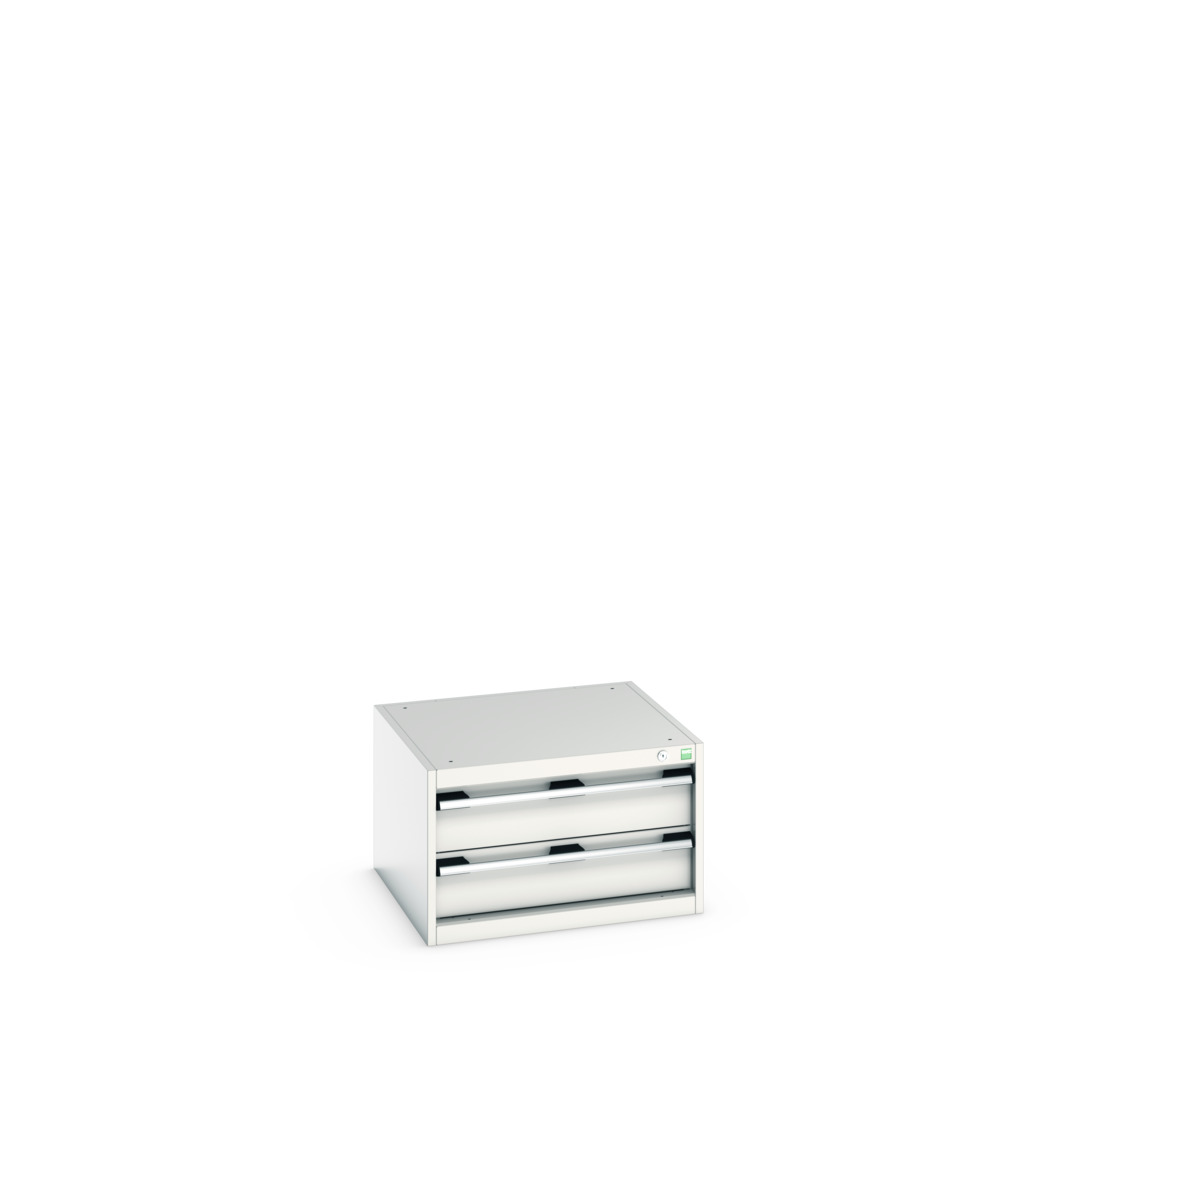 40019005.16V - cubio drawer cabinet